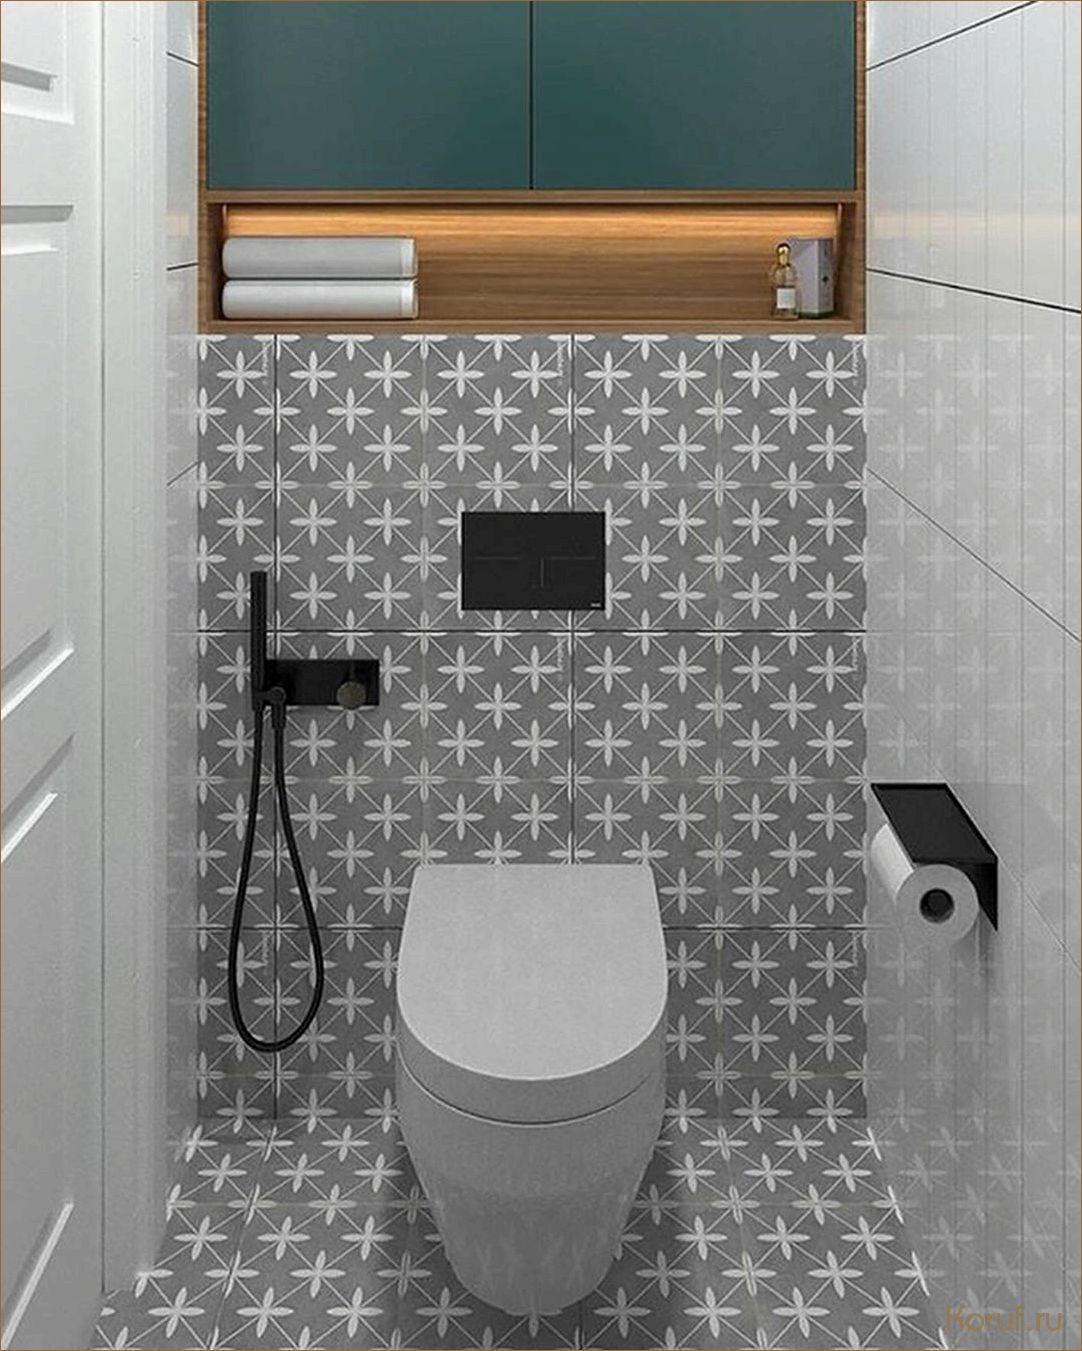 Мастер-класс: Как создать стильный дизайн маленького туалета с минимальными затратами